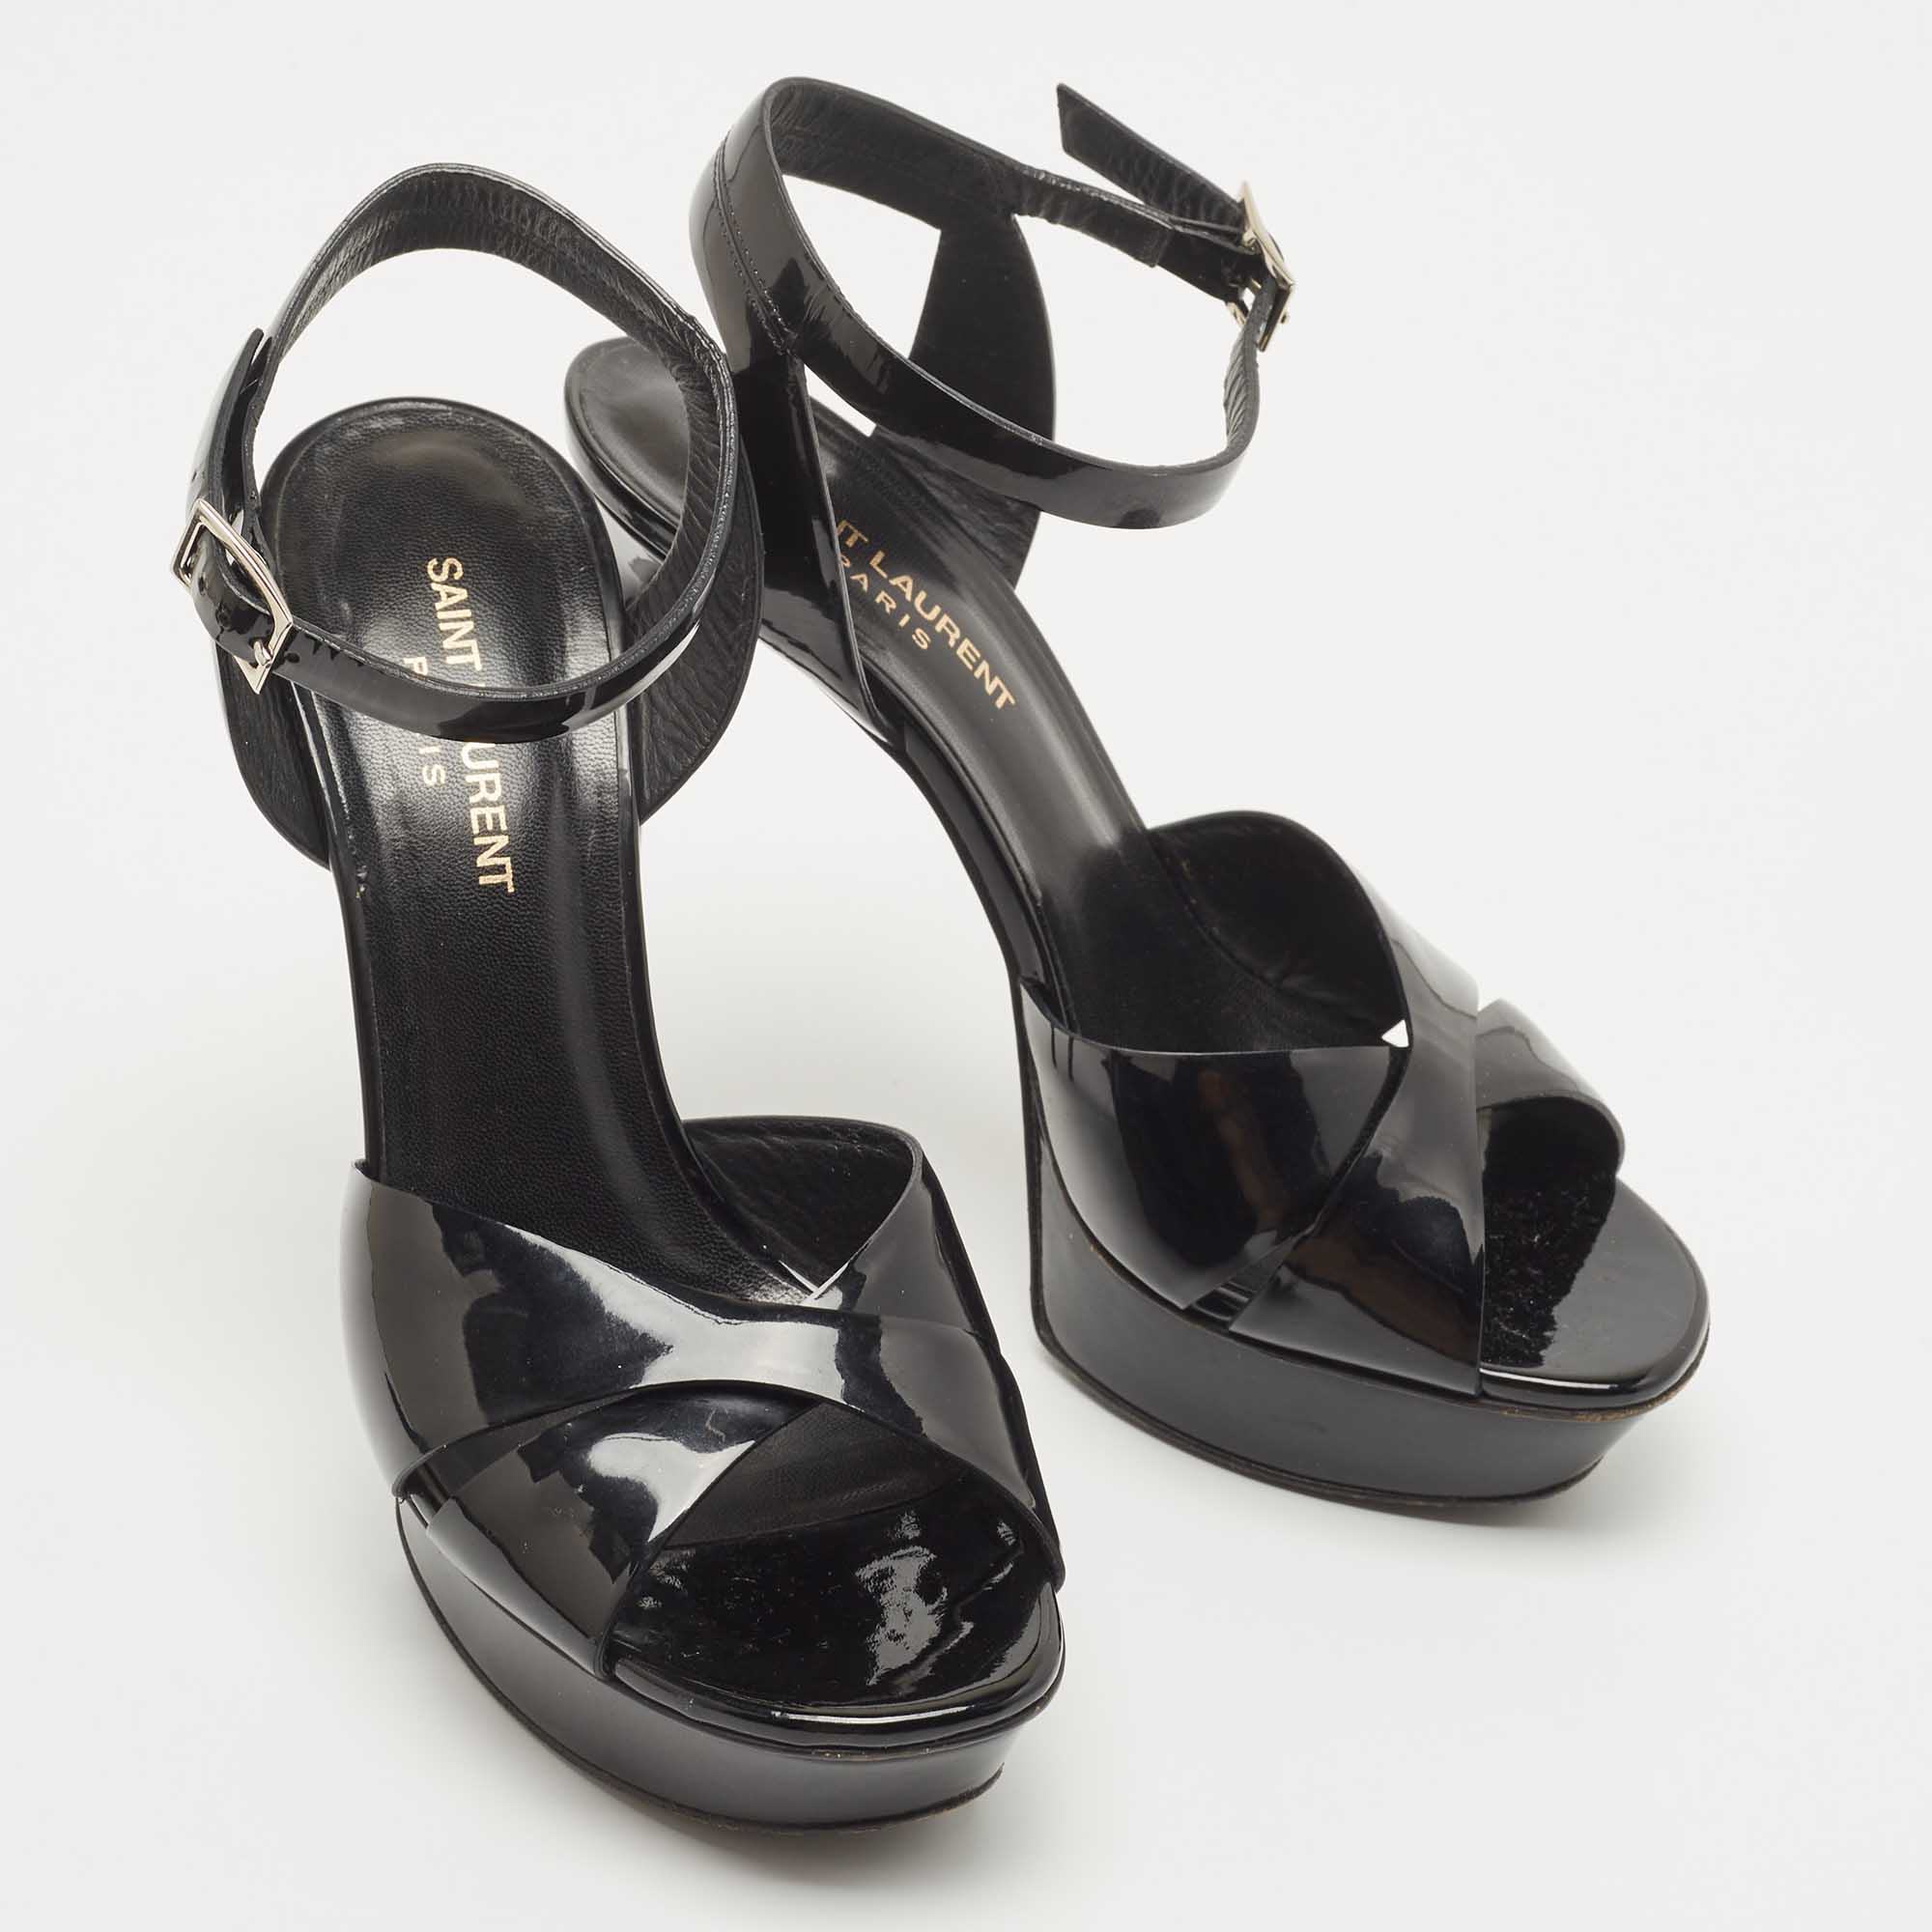 Saint Laurent Black Patent Leather Ankle Strap Sandals Size 39